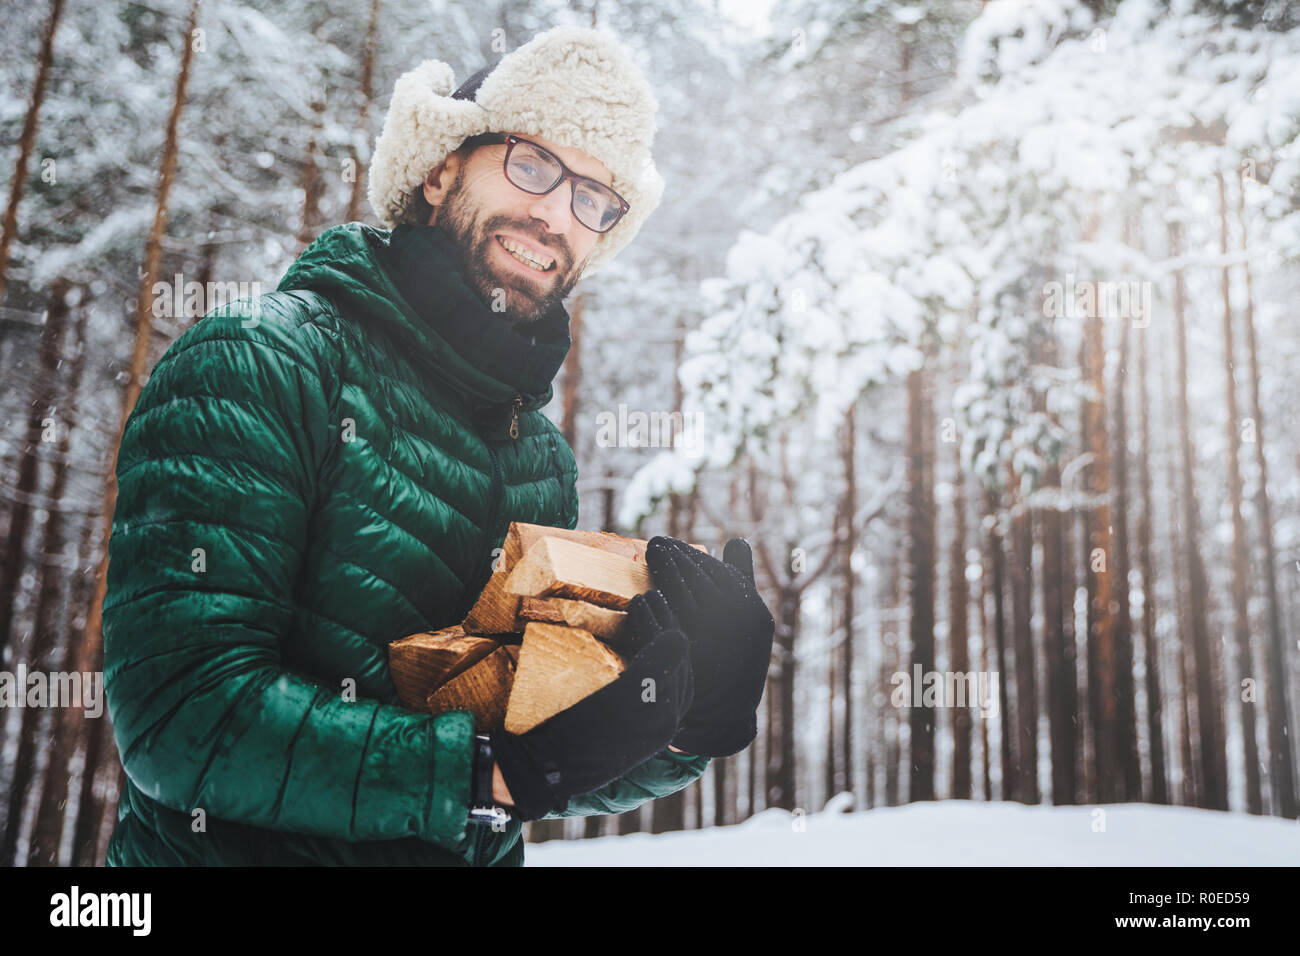 Hombre barbudo feliz con gafas de sol en un clima soleado y nevado concepto  de pasar tiempo activo caminando después de una ventisca de nieve el tipo  sonriendo y usando una chaqueta de invierno